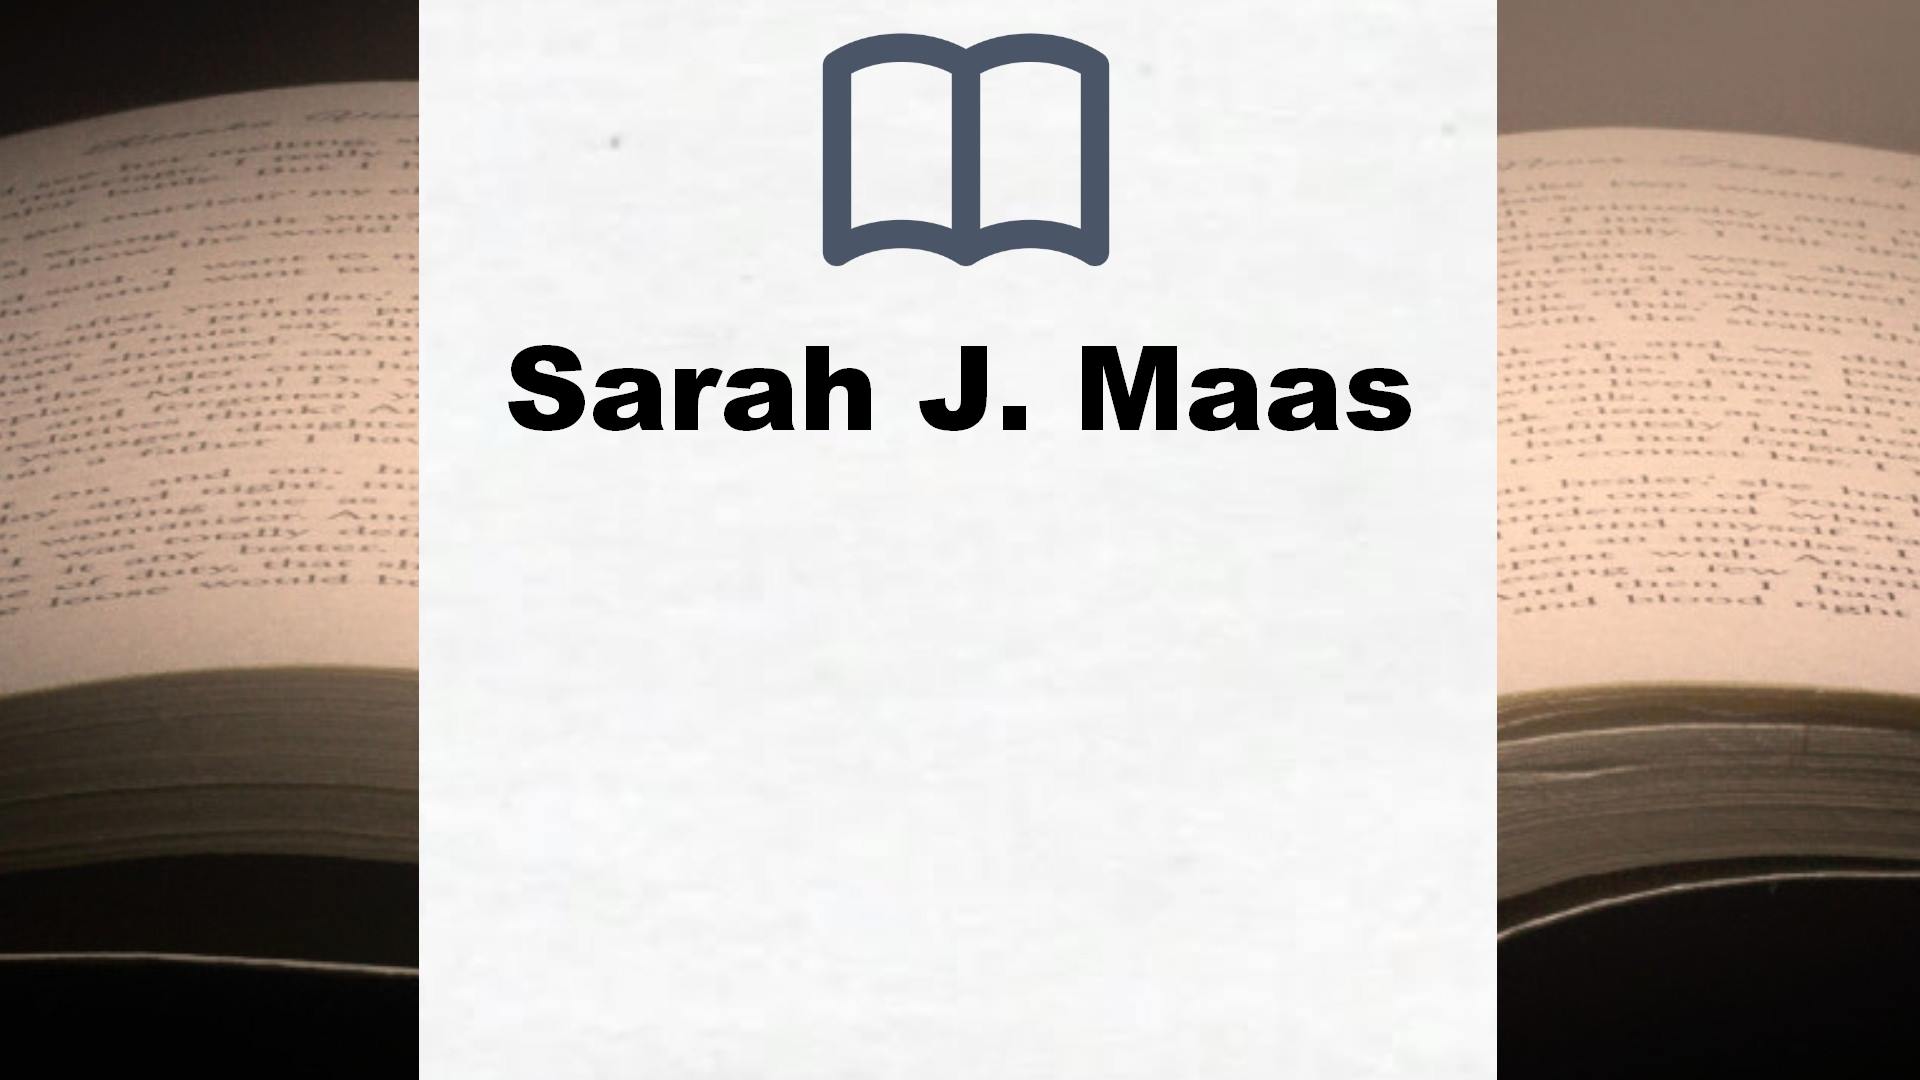 Libros Sarah J. Maas